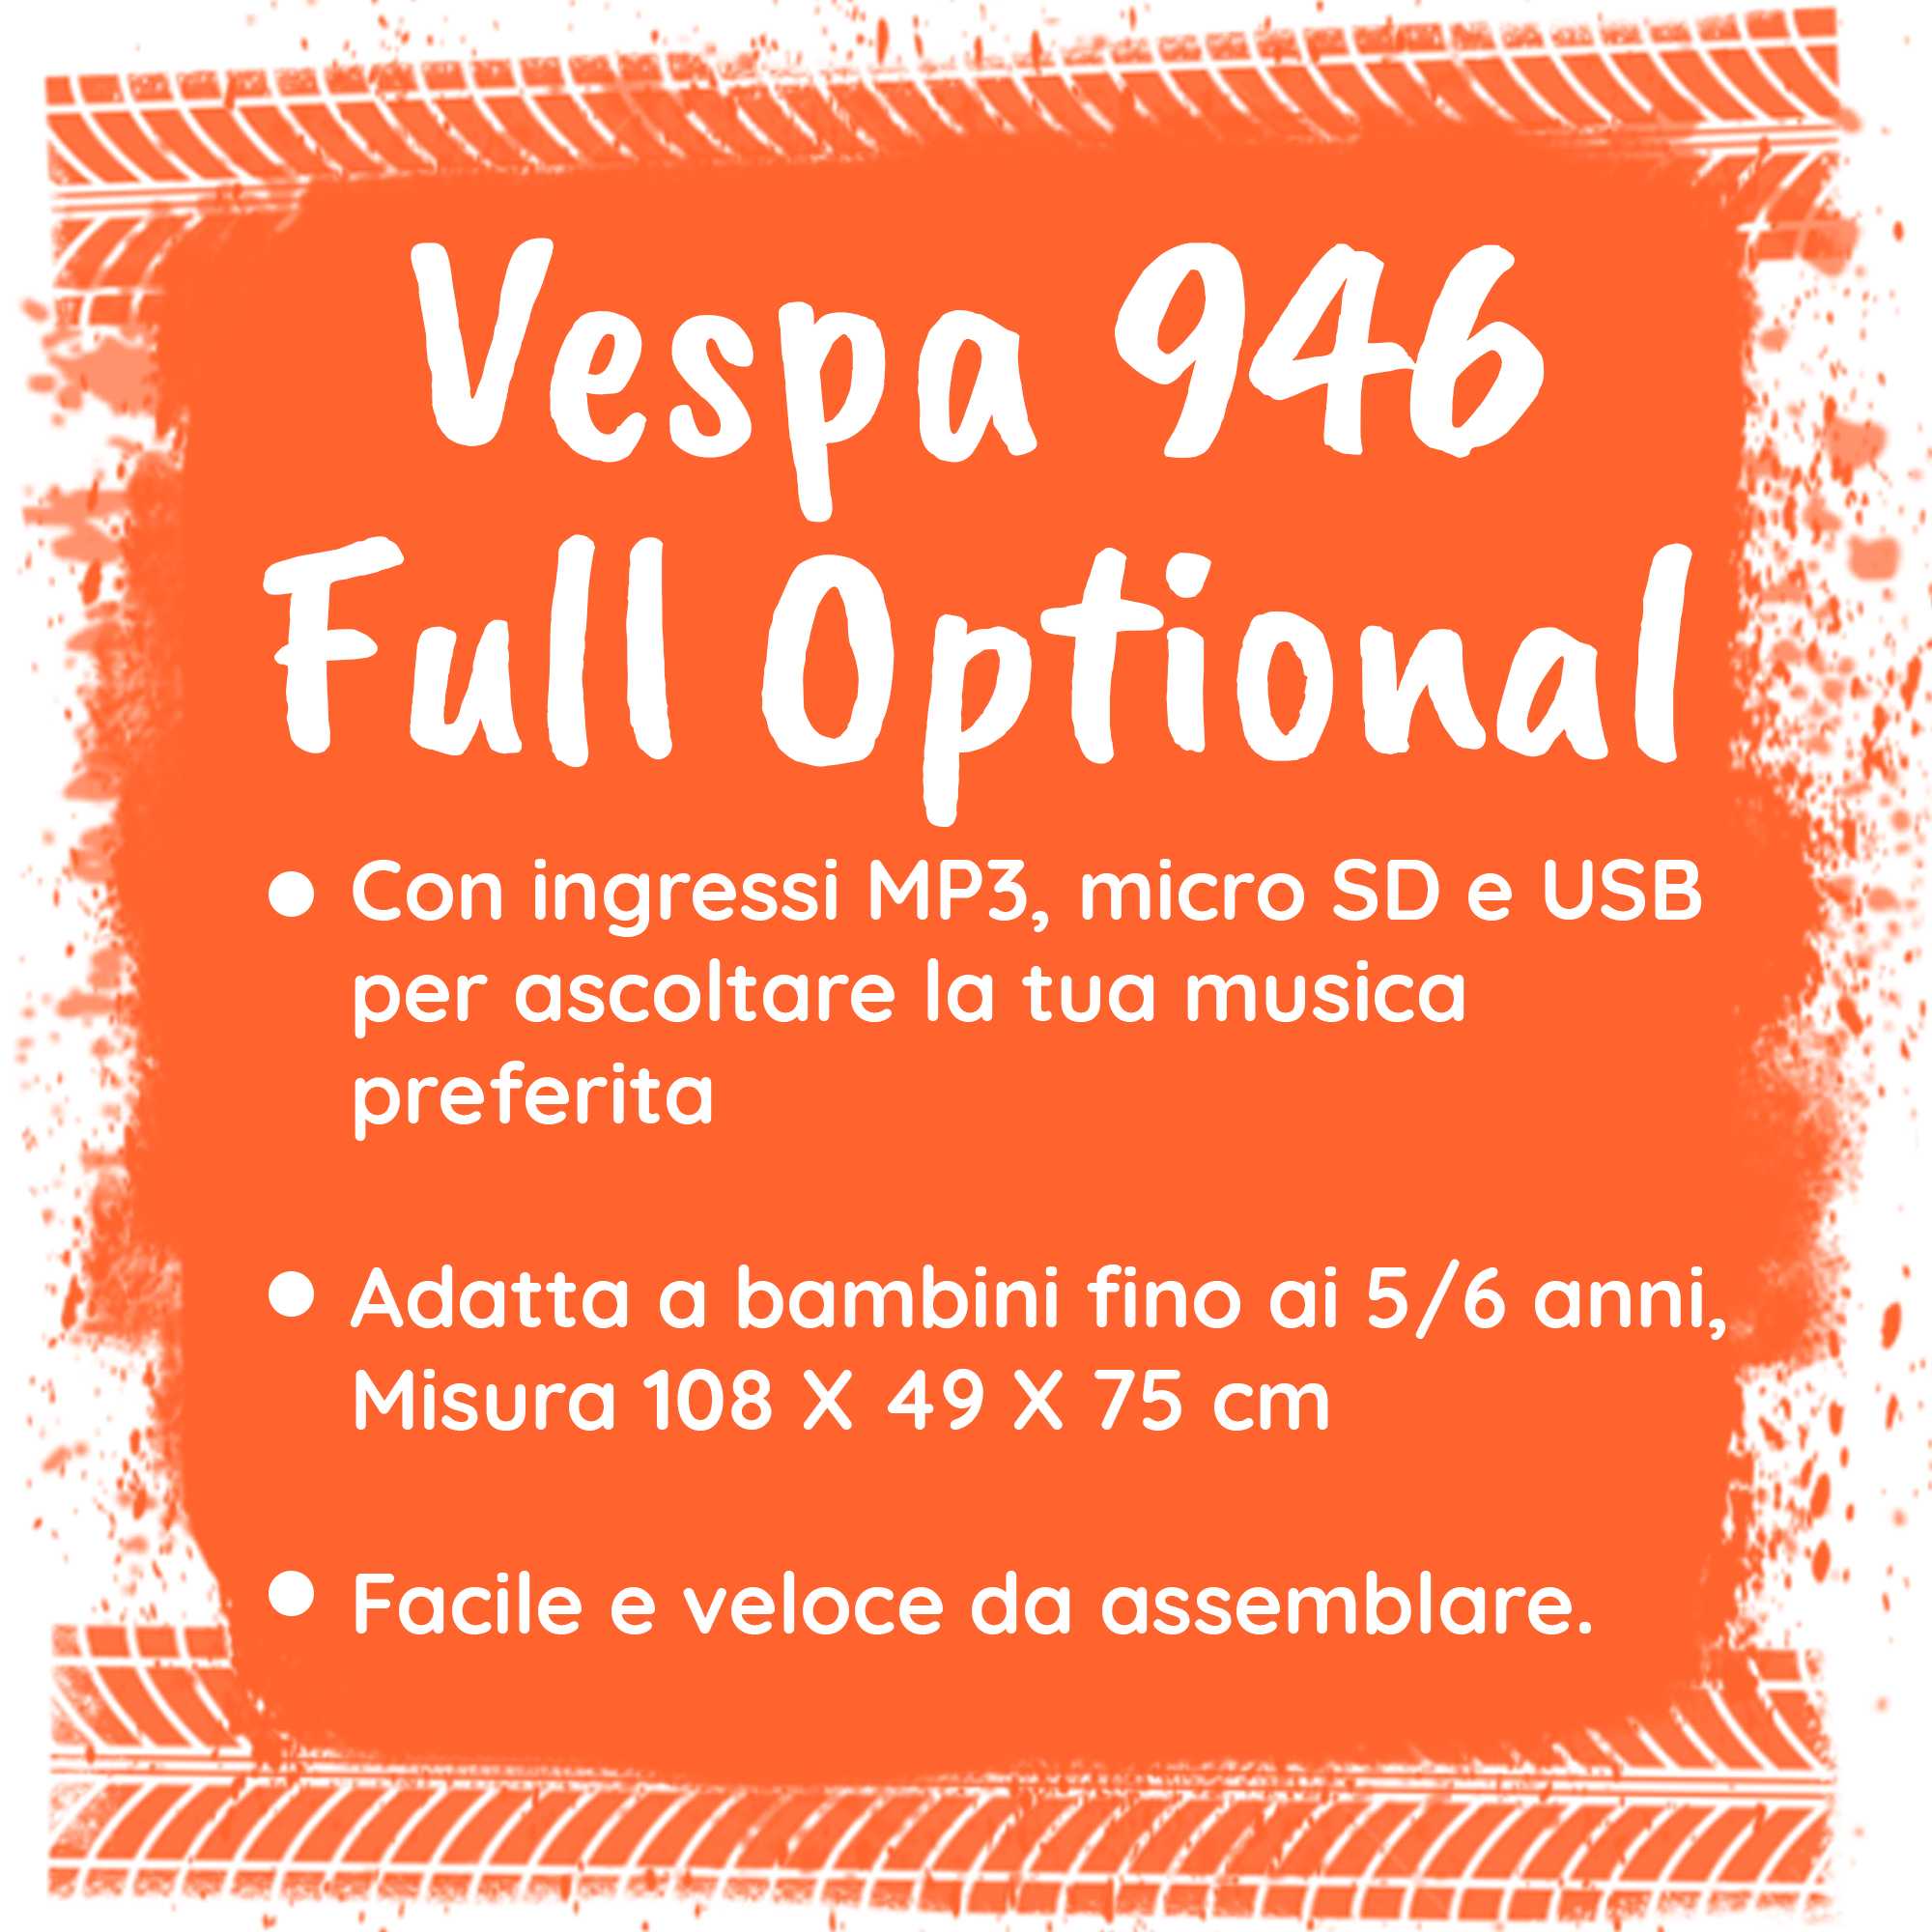 Vespa 946 full optional